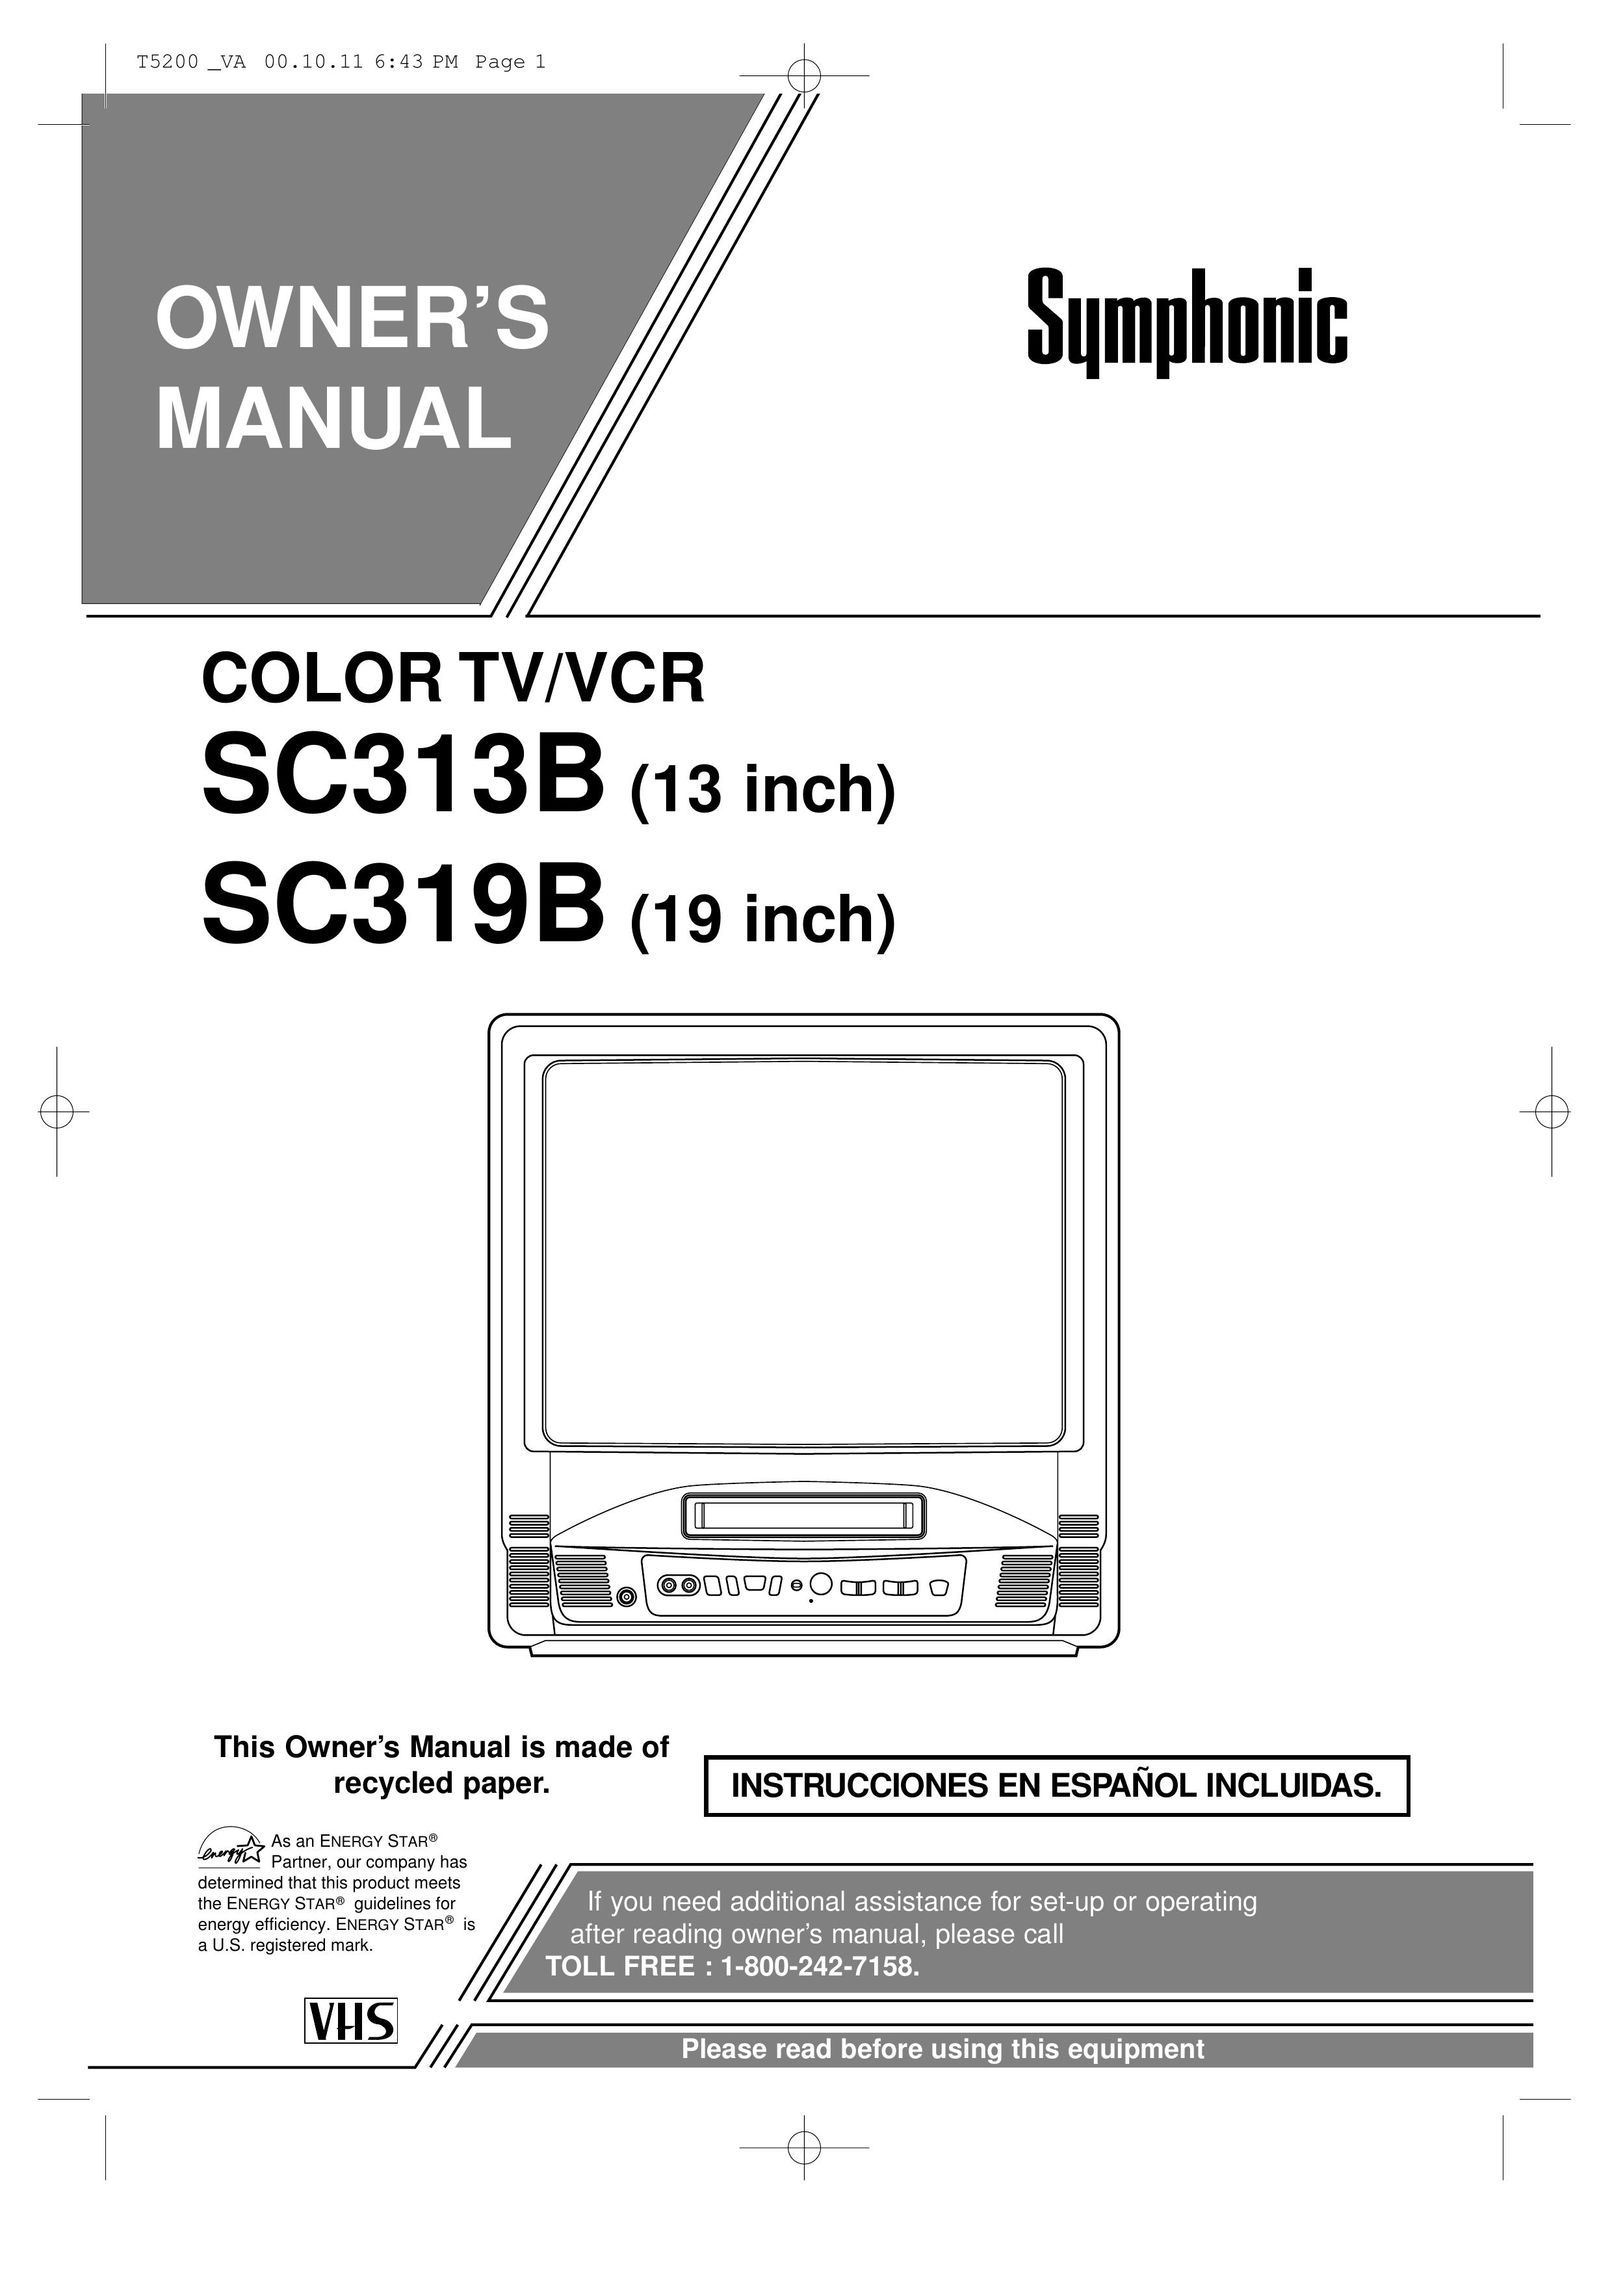 Symphonic SC313B TV VCR Combo User Manual